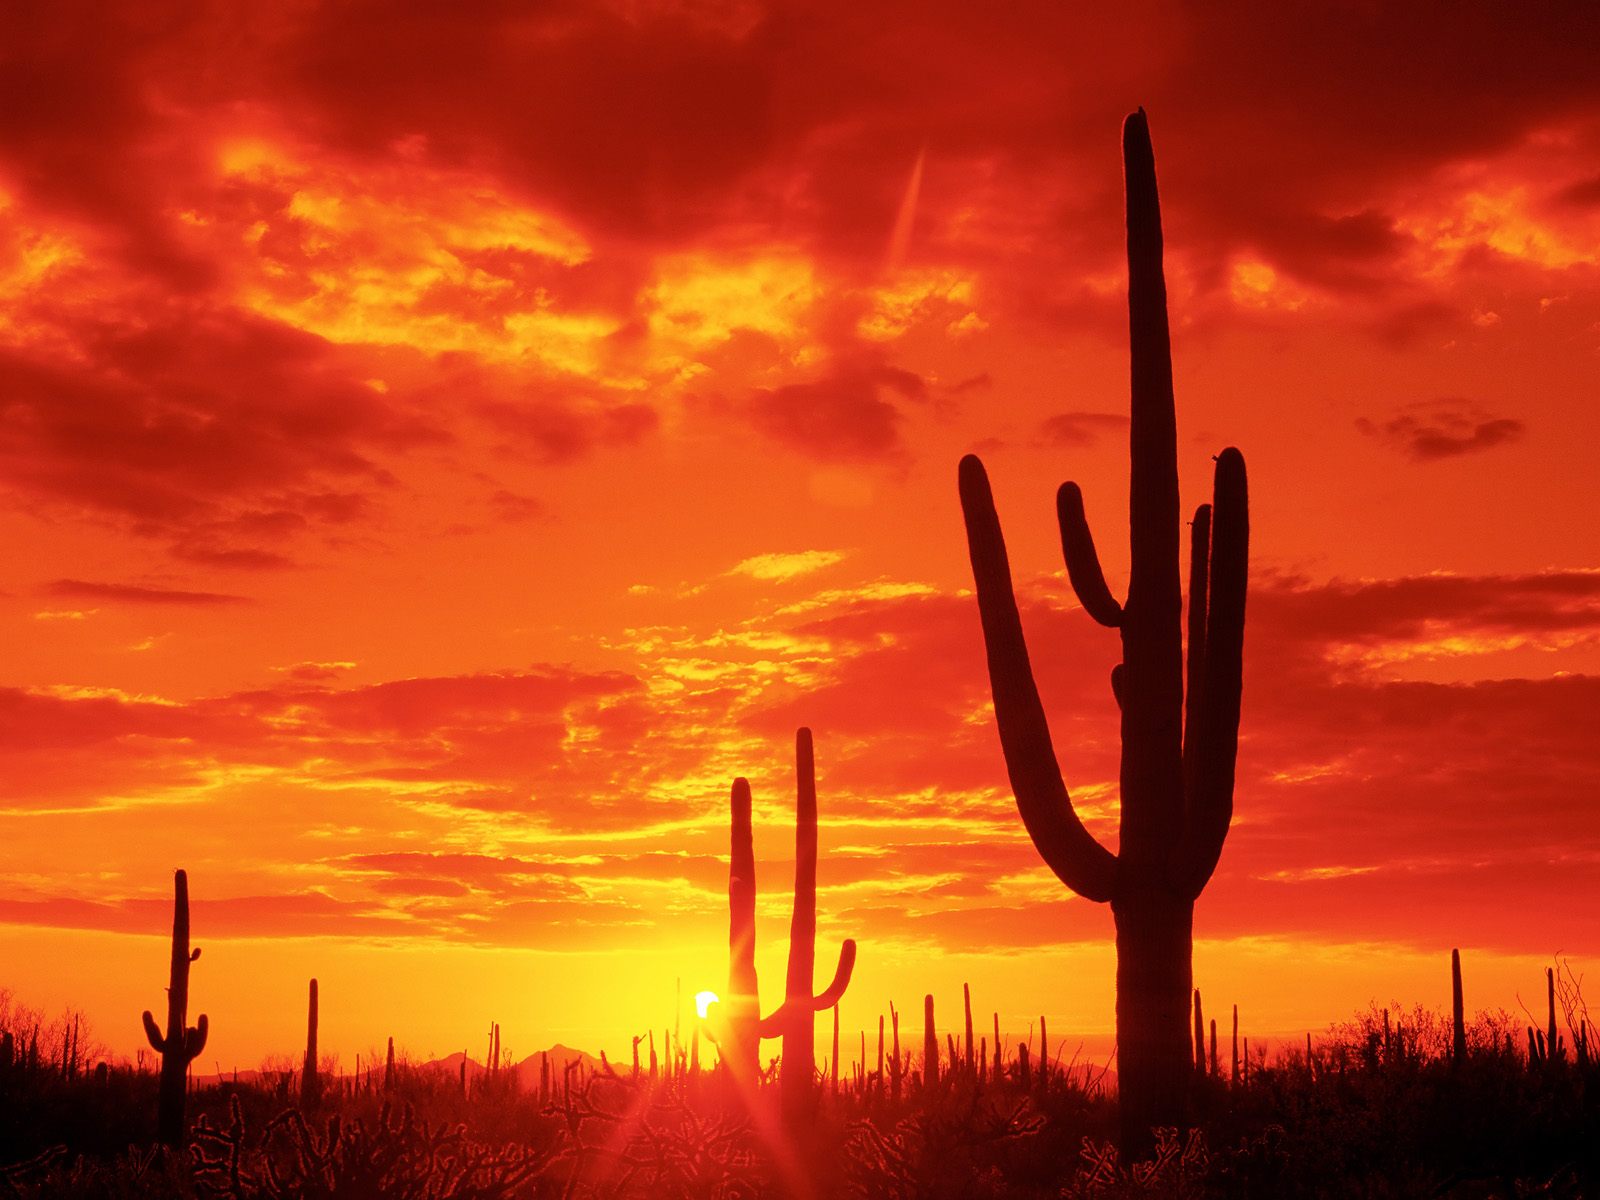 Free HQ Burning Sunset Saguaro National Park Arizona Wallpaper   Free